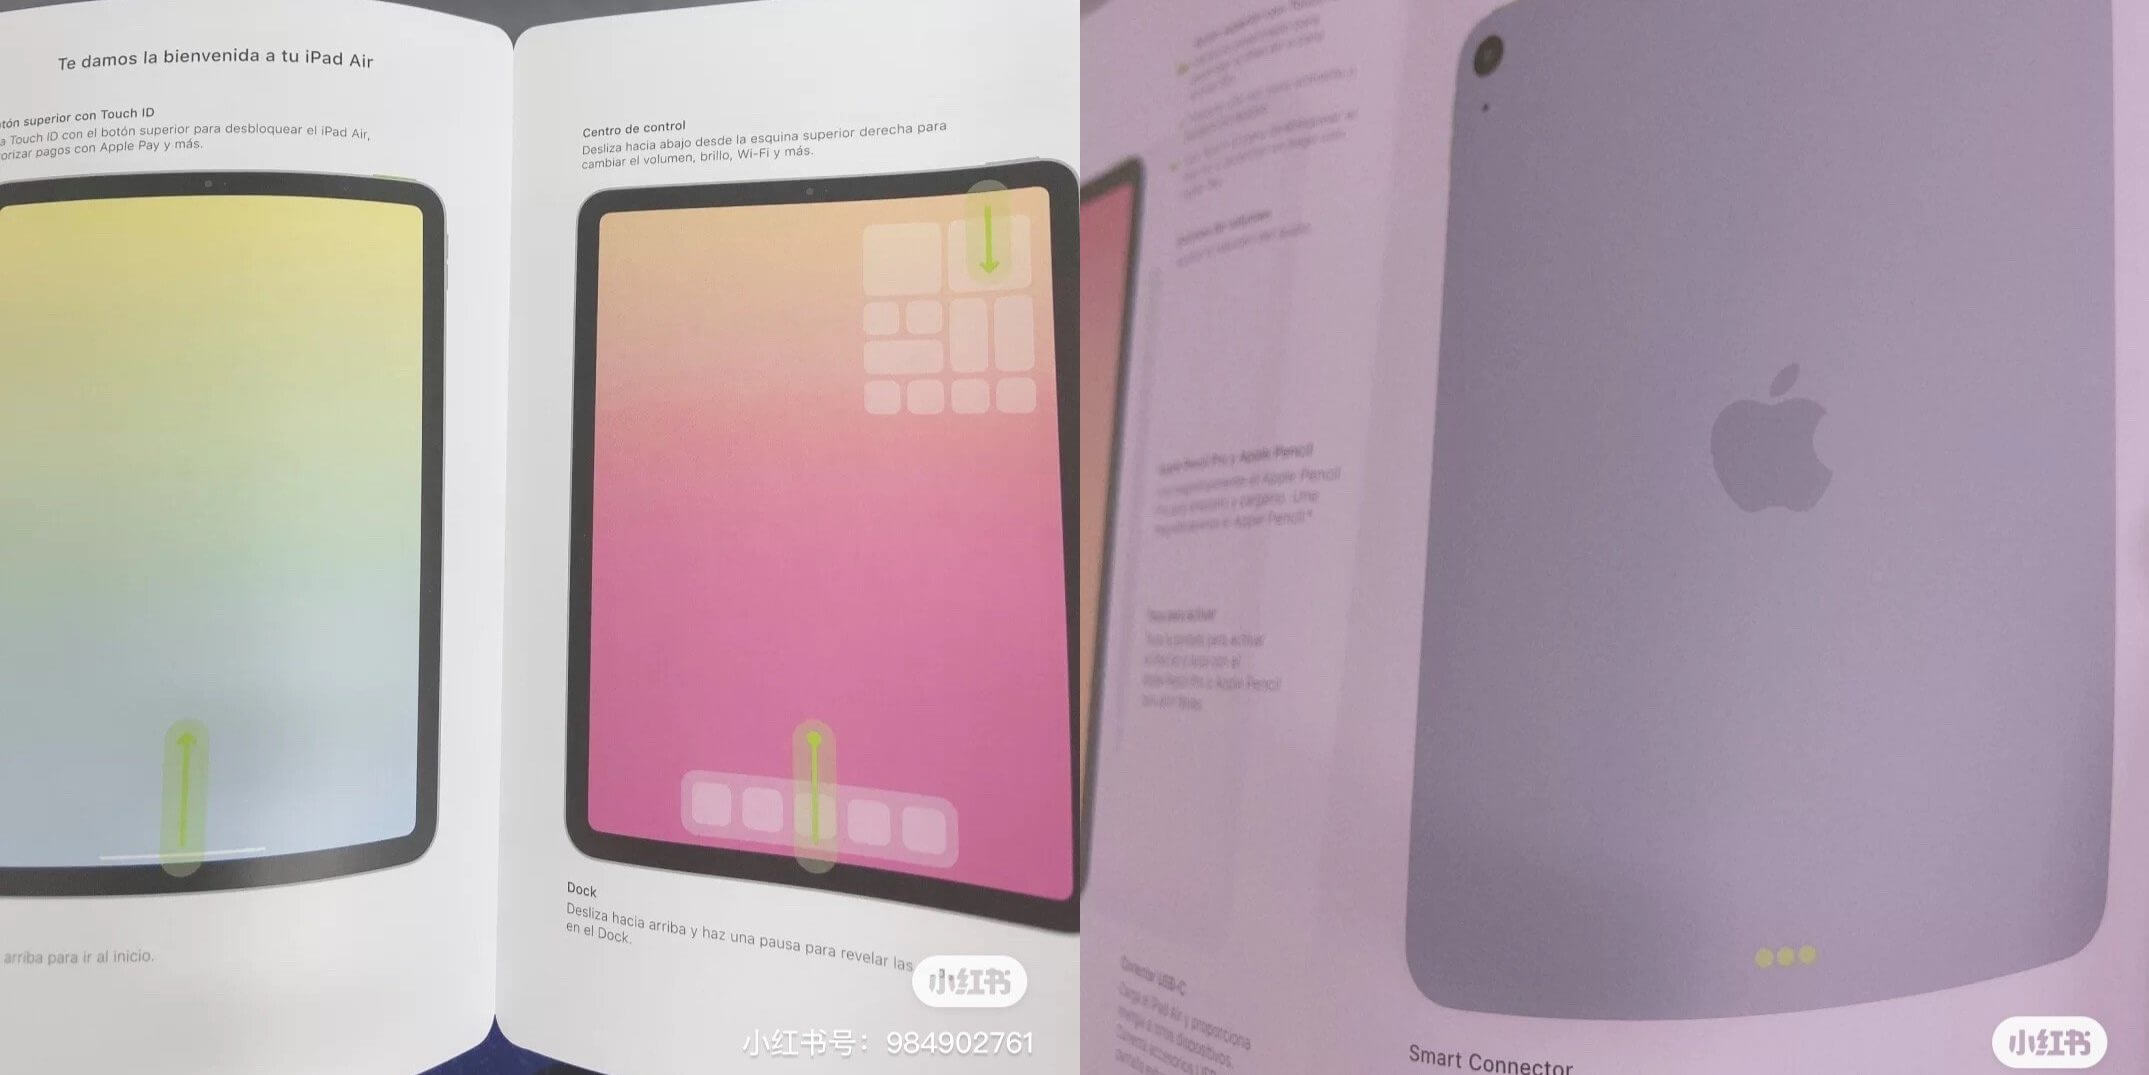 Брошюра о предполагаемом iPad Air 4 показывает новый полноэкранный дизайн, кнопку питания Touch ID, USB-C